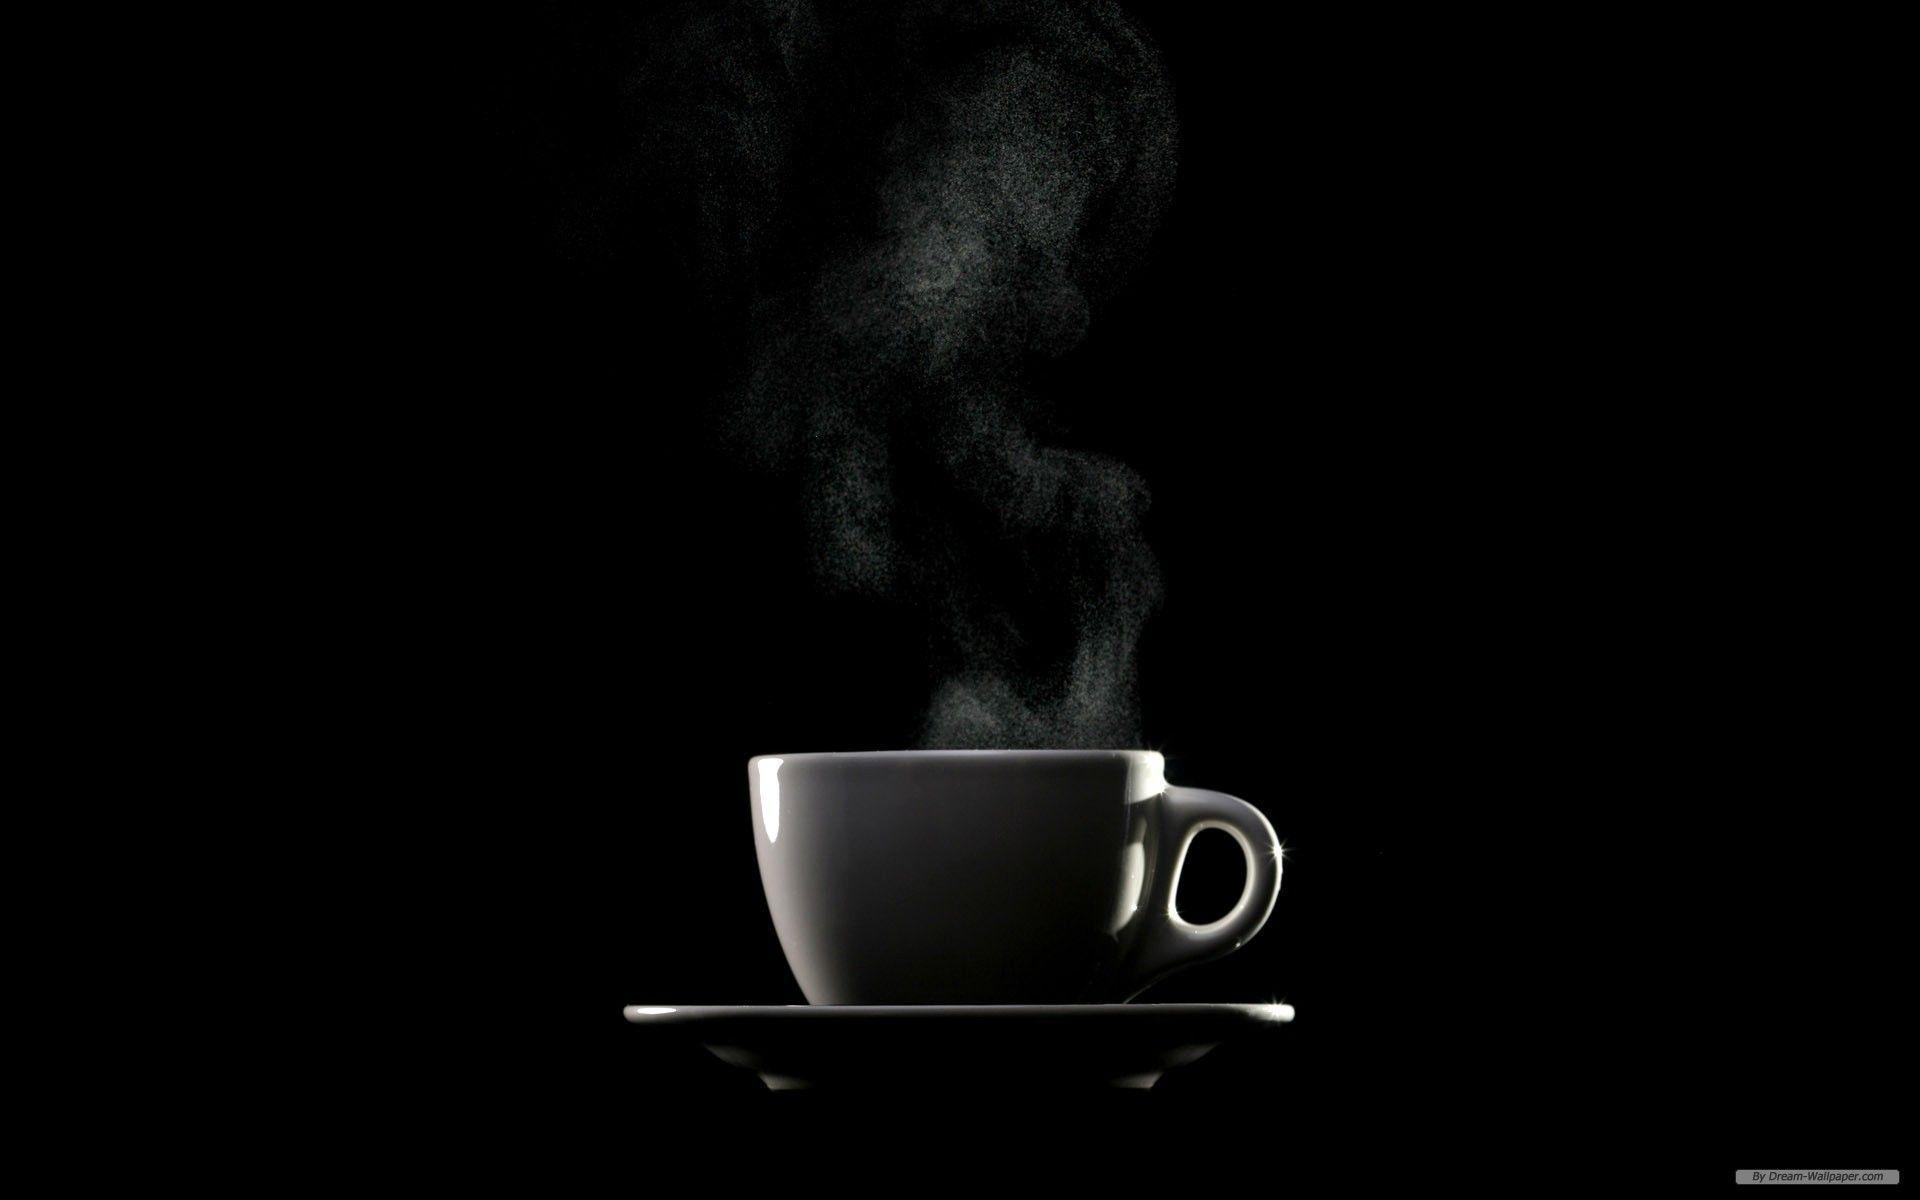 Desktop Wallpaper Steaming Cup Of Coffee Mug 1280 X 800 128 Kb Jpeg